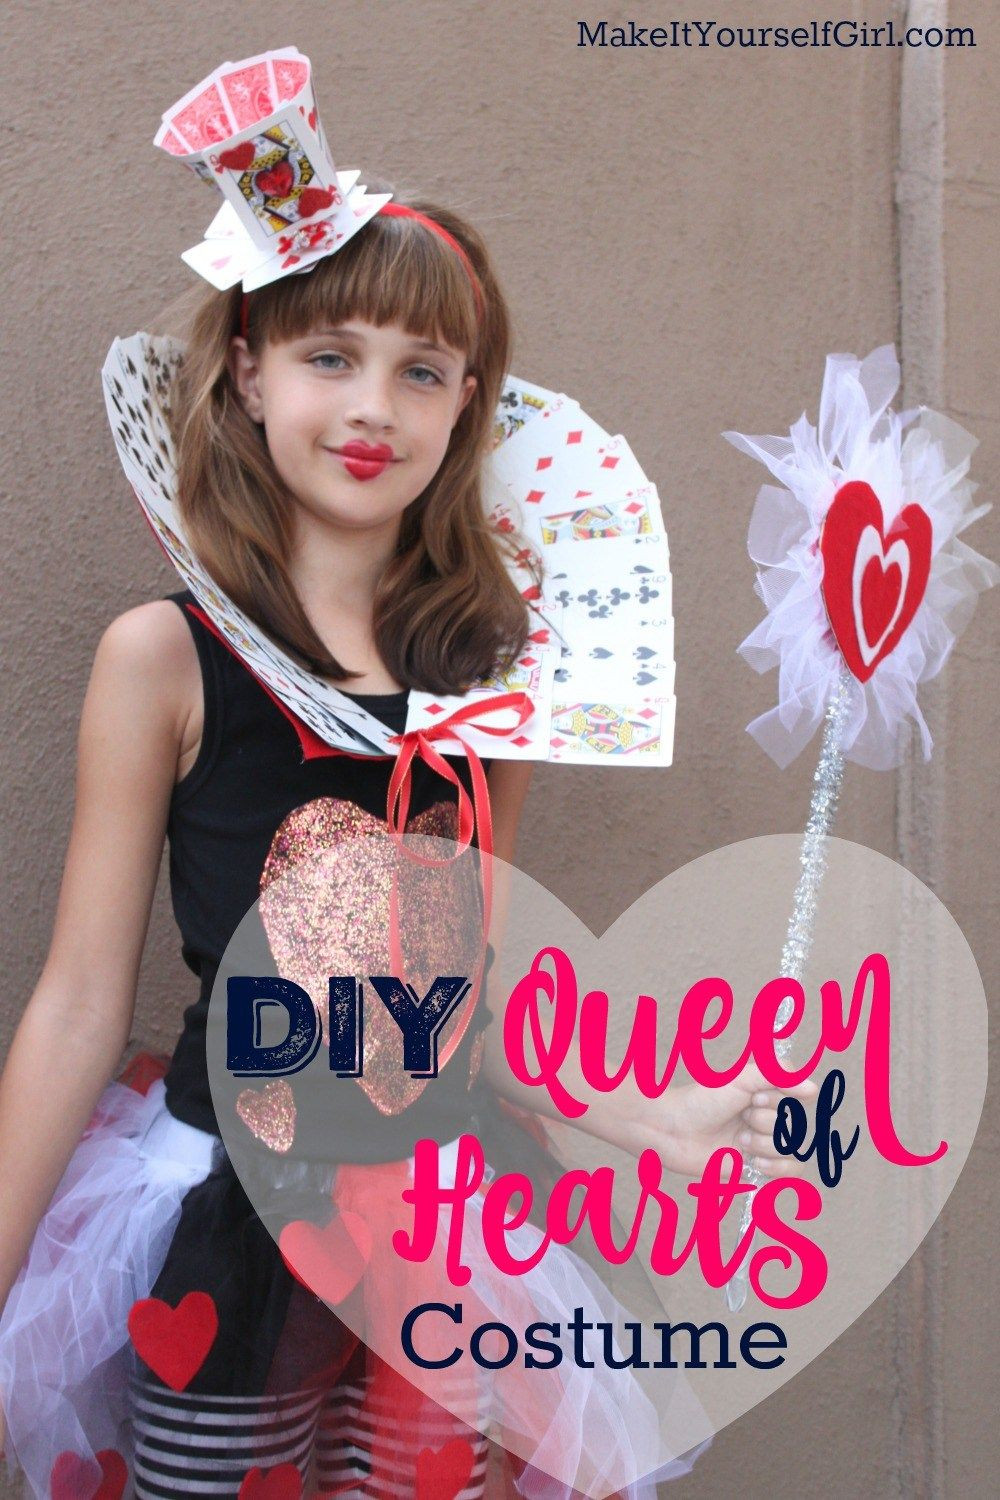 DIY Queen Of Hearts Costume
 DIY Queen of Hearts Costume Tutorial